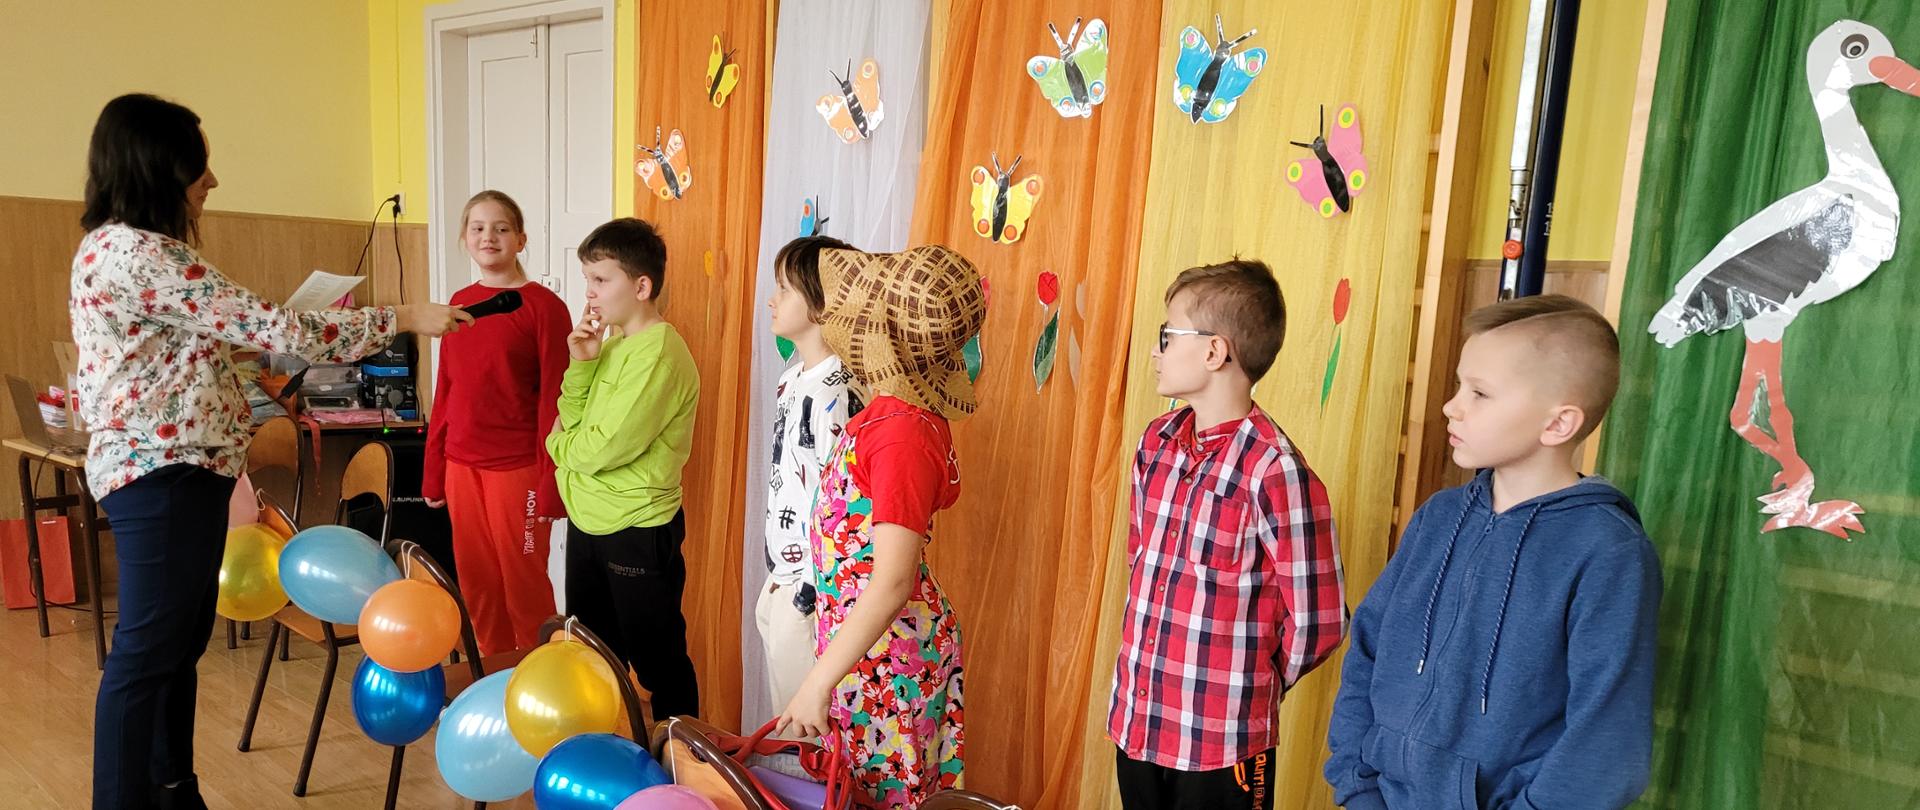 Uczniowie biorą udział w konkursie wiosennym.